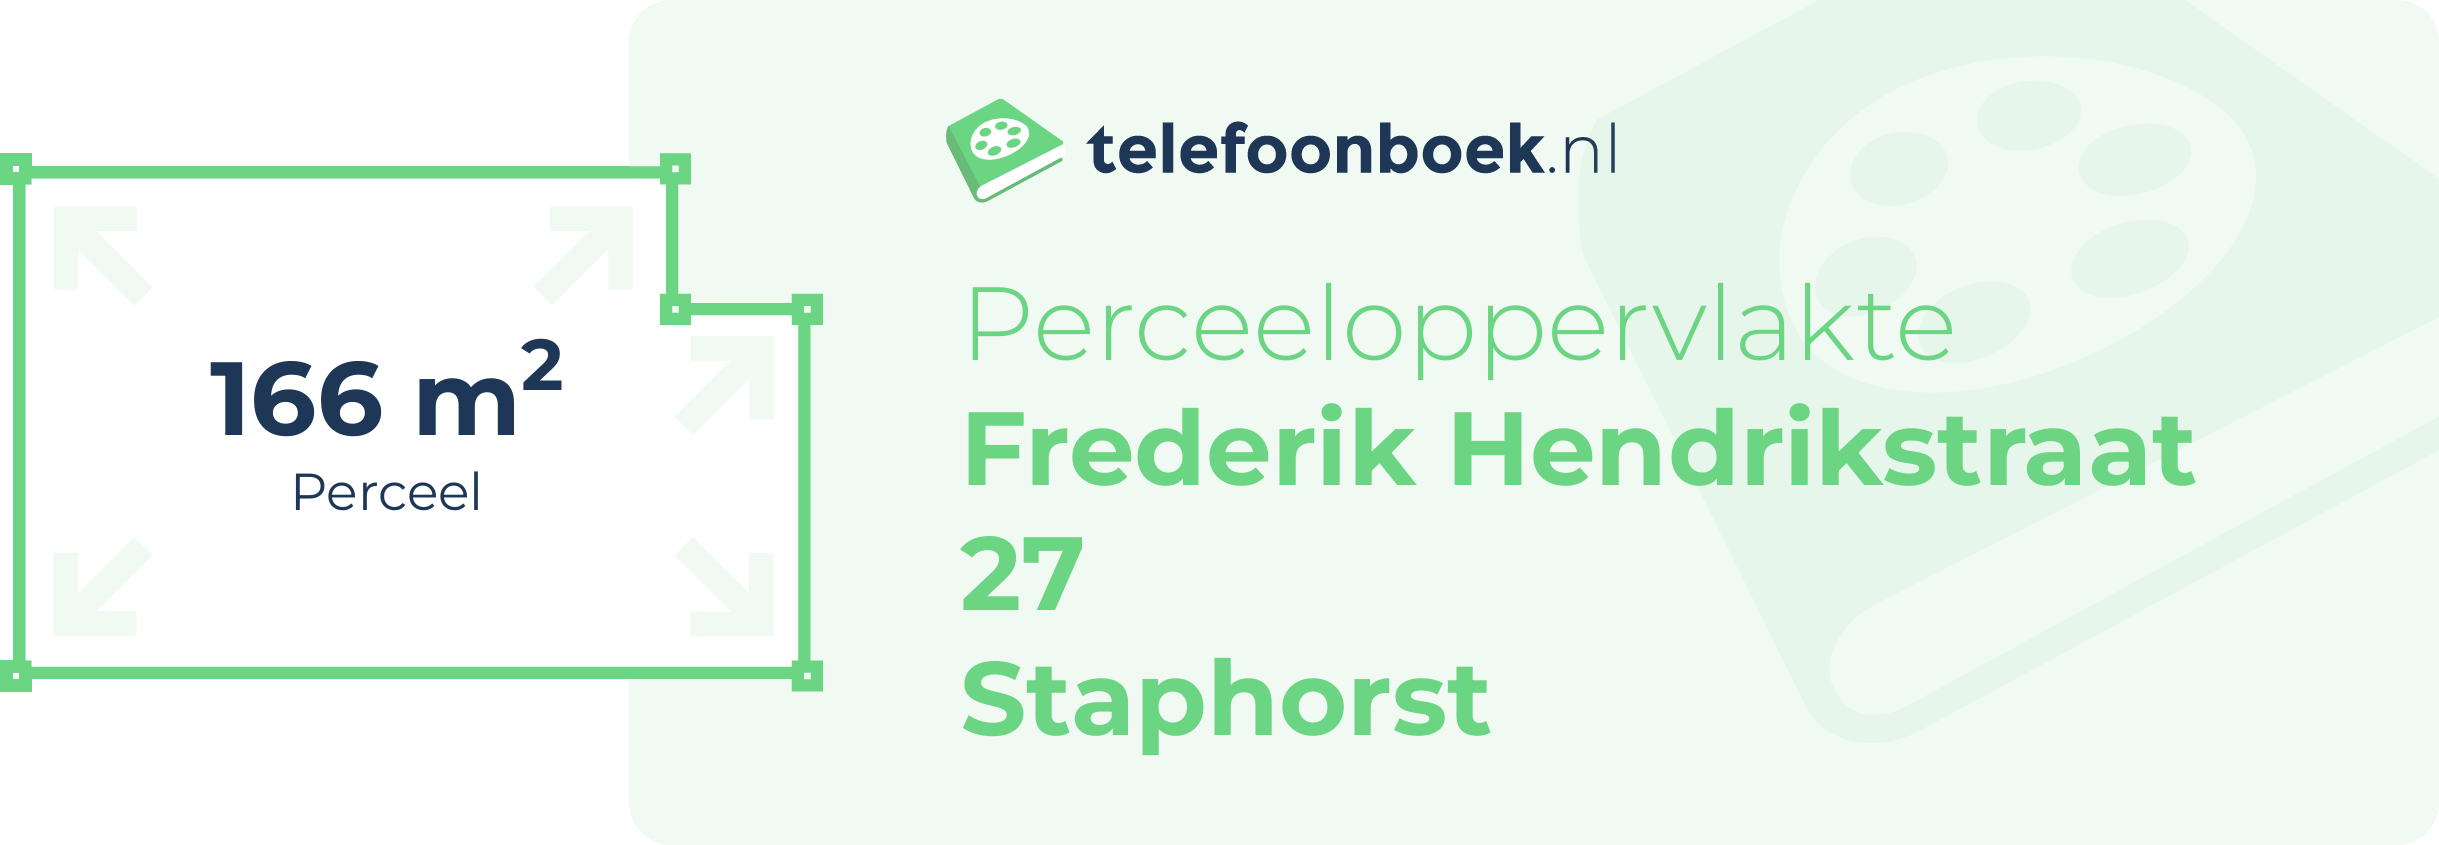 Perceeloppervlakte Frederik Hendrikstraat 27 Staphorst